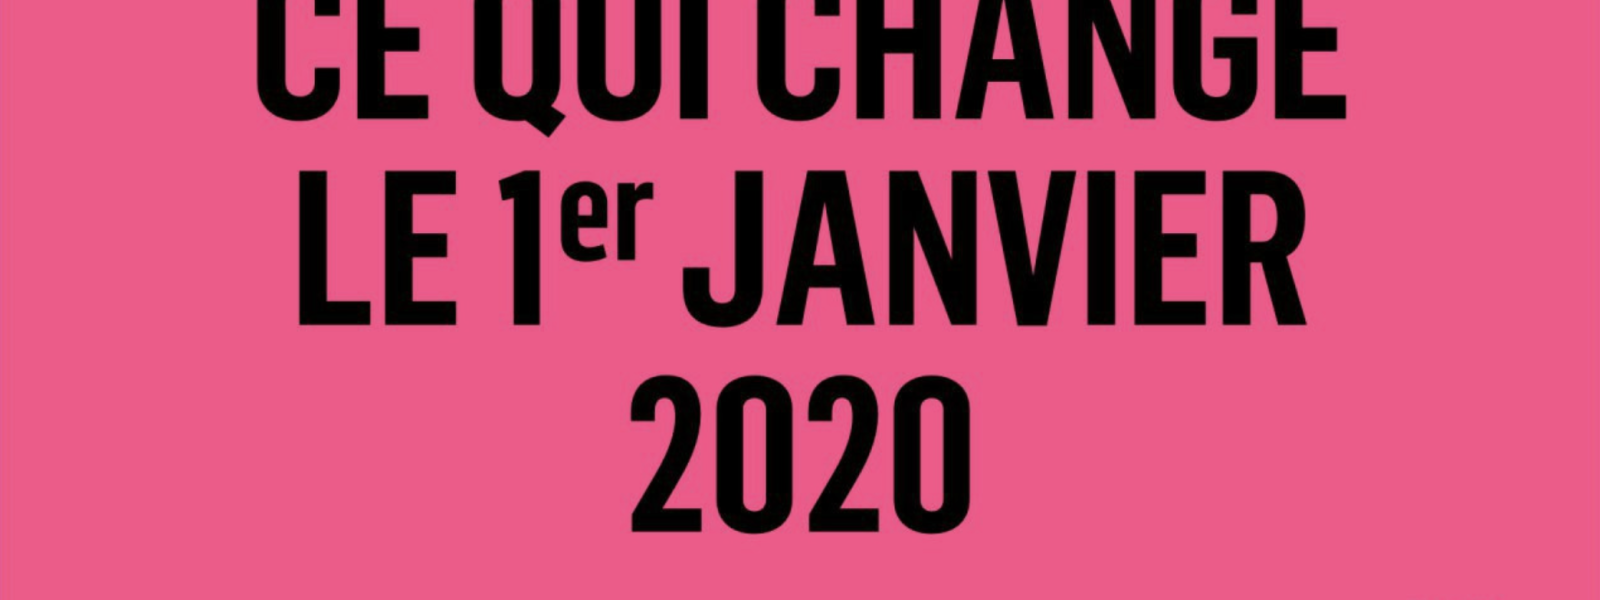 Ce qui change au 1er janvier 2020